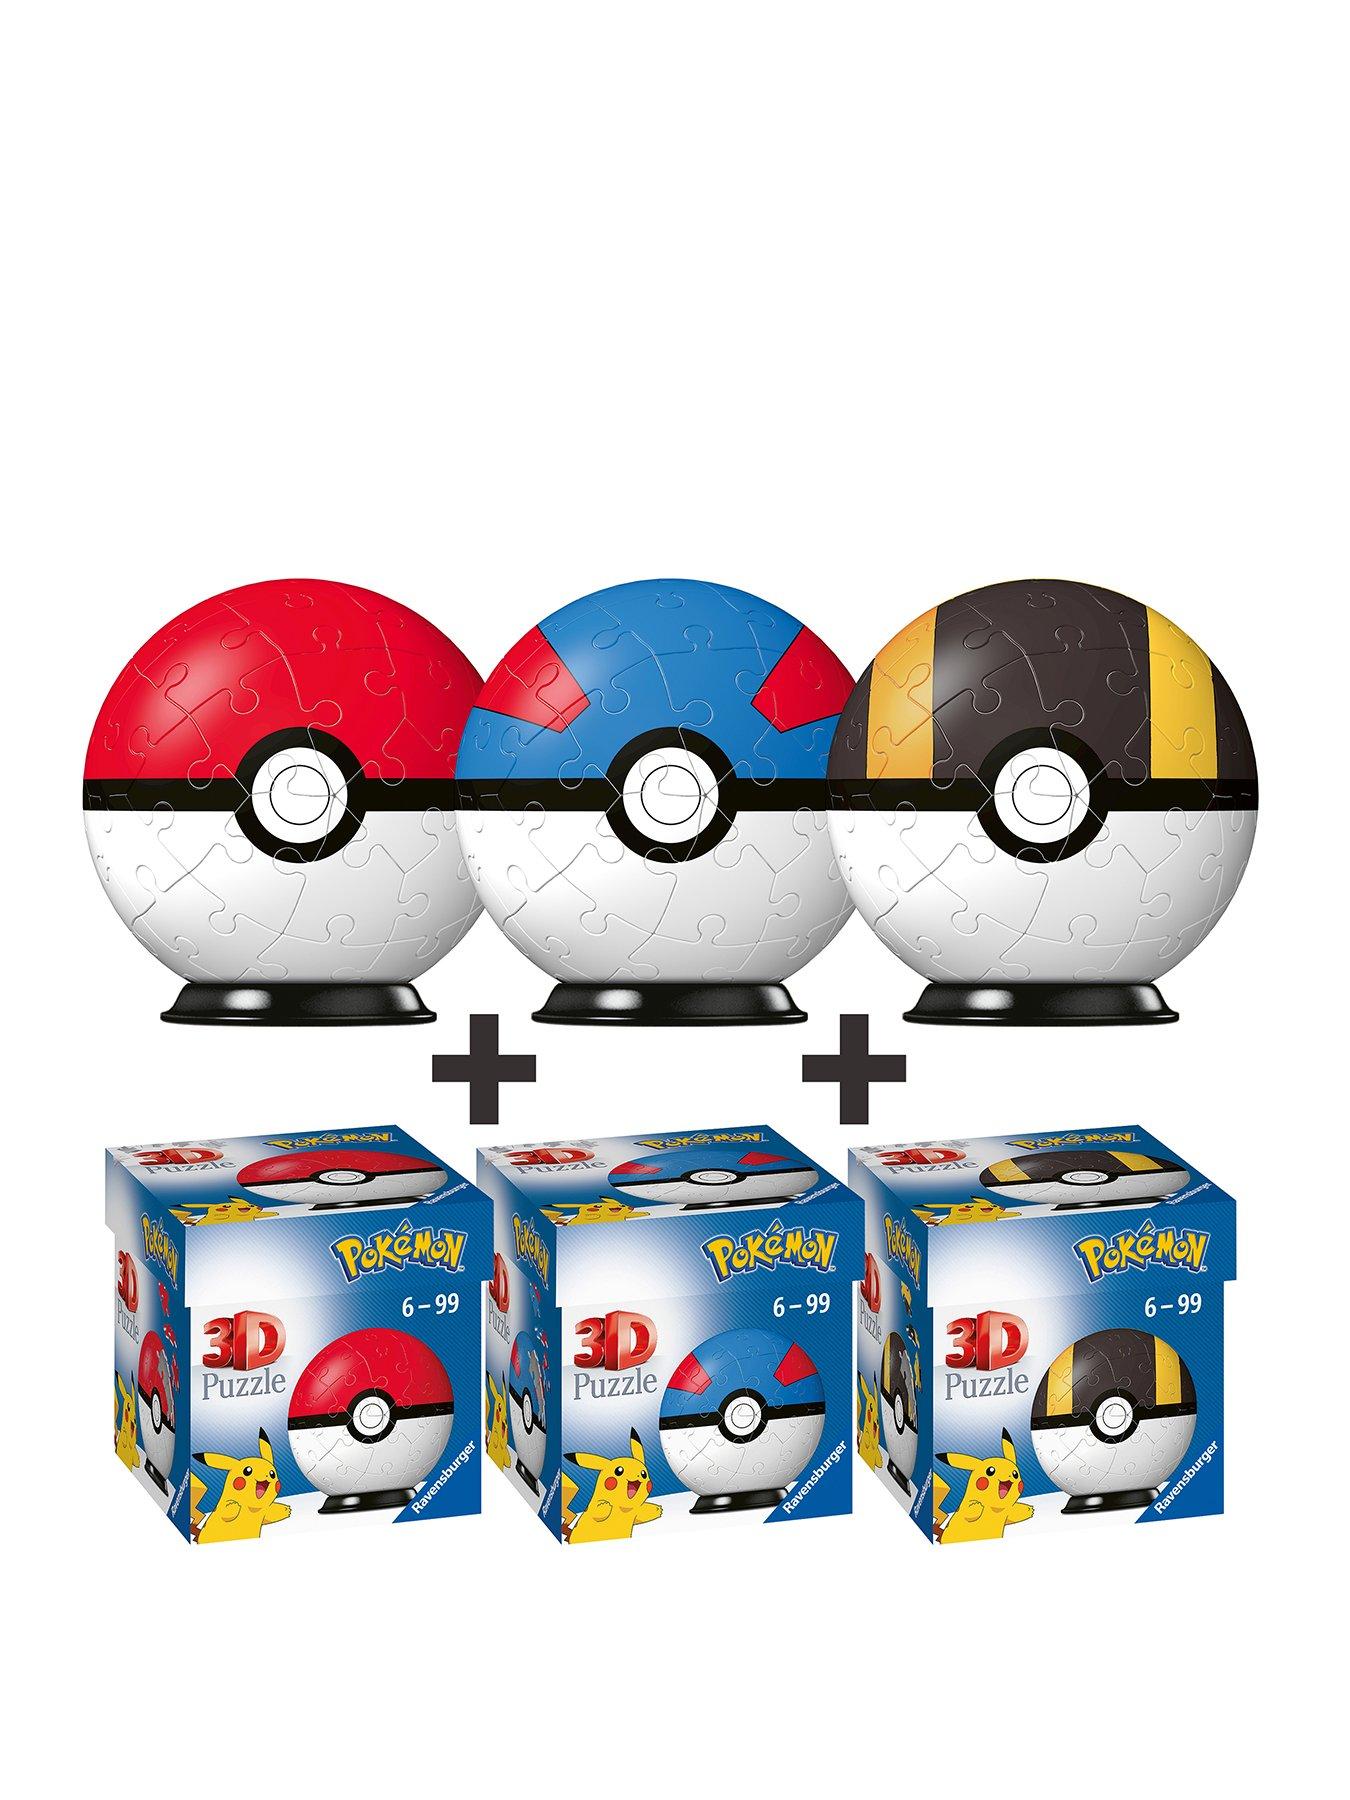 Ravensburger Pokemon Triple Pack 11256 54pc 11265 54c 1126654 pc